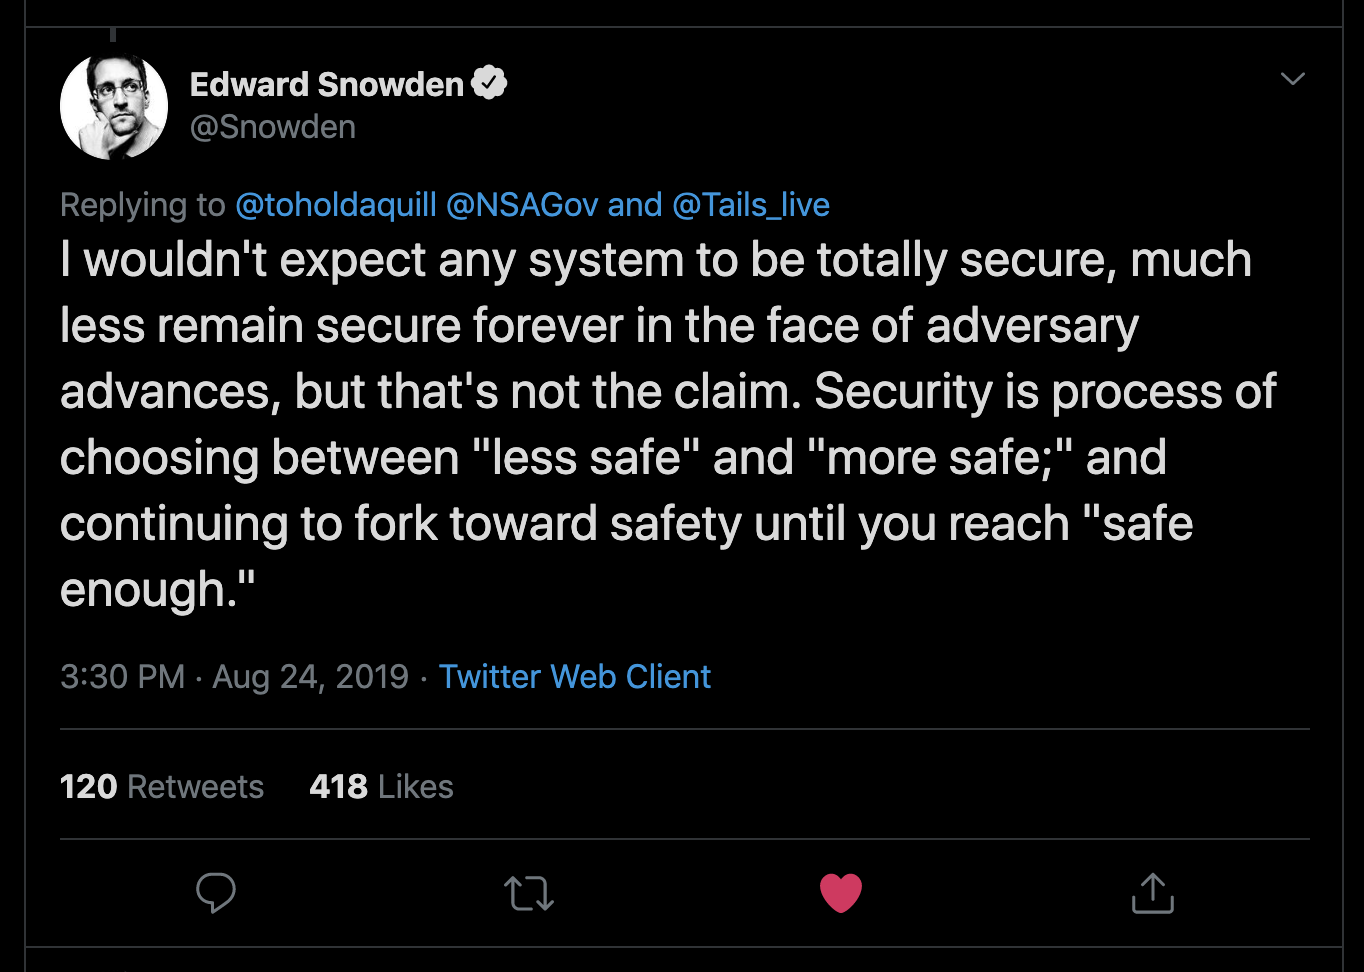 Edward Snowden tweet about security trade-offs